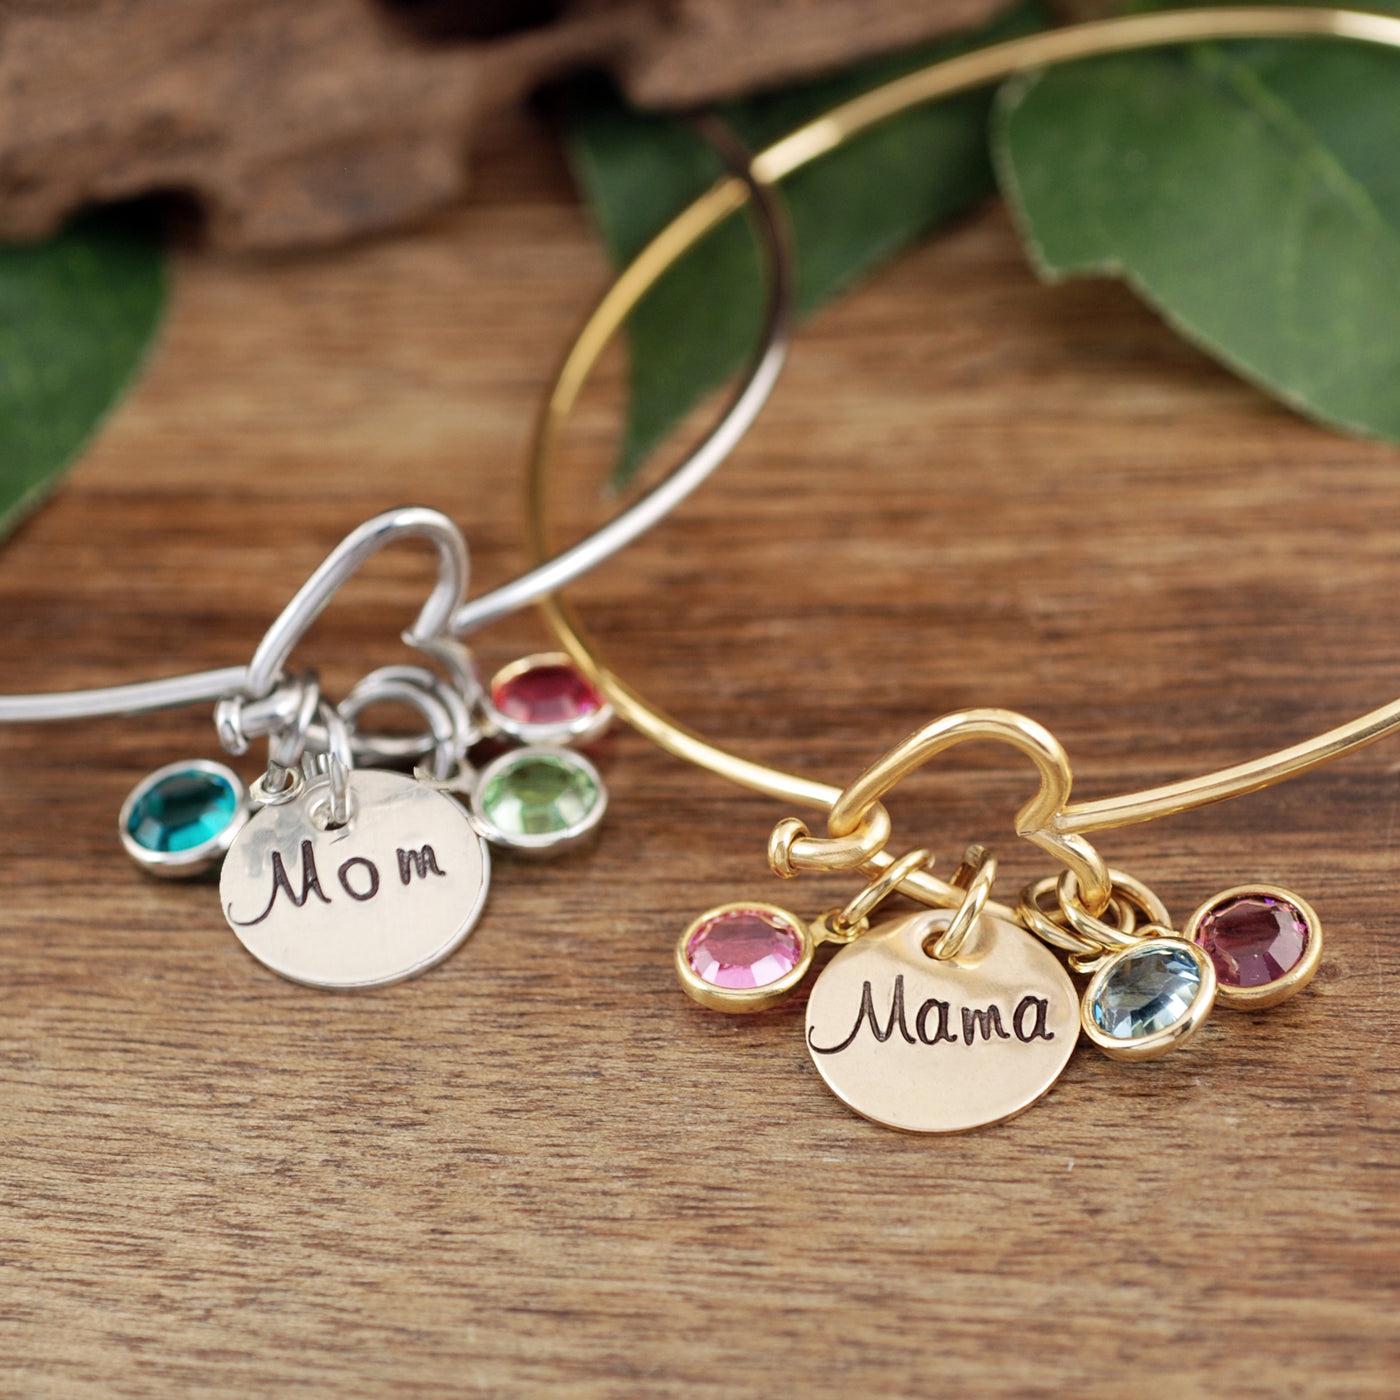 Birthstone Heart Bracelet for Mom or Grandma - Godfullness